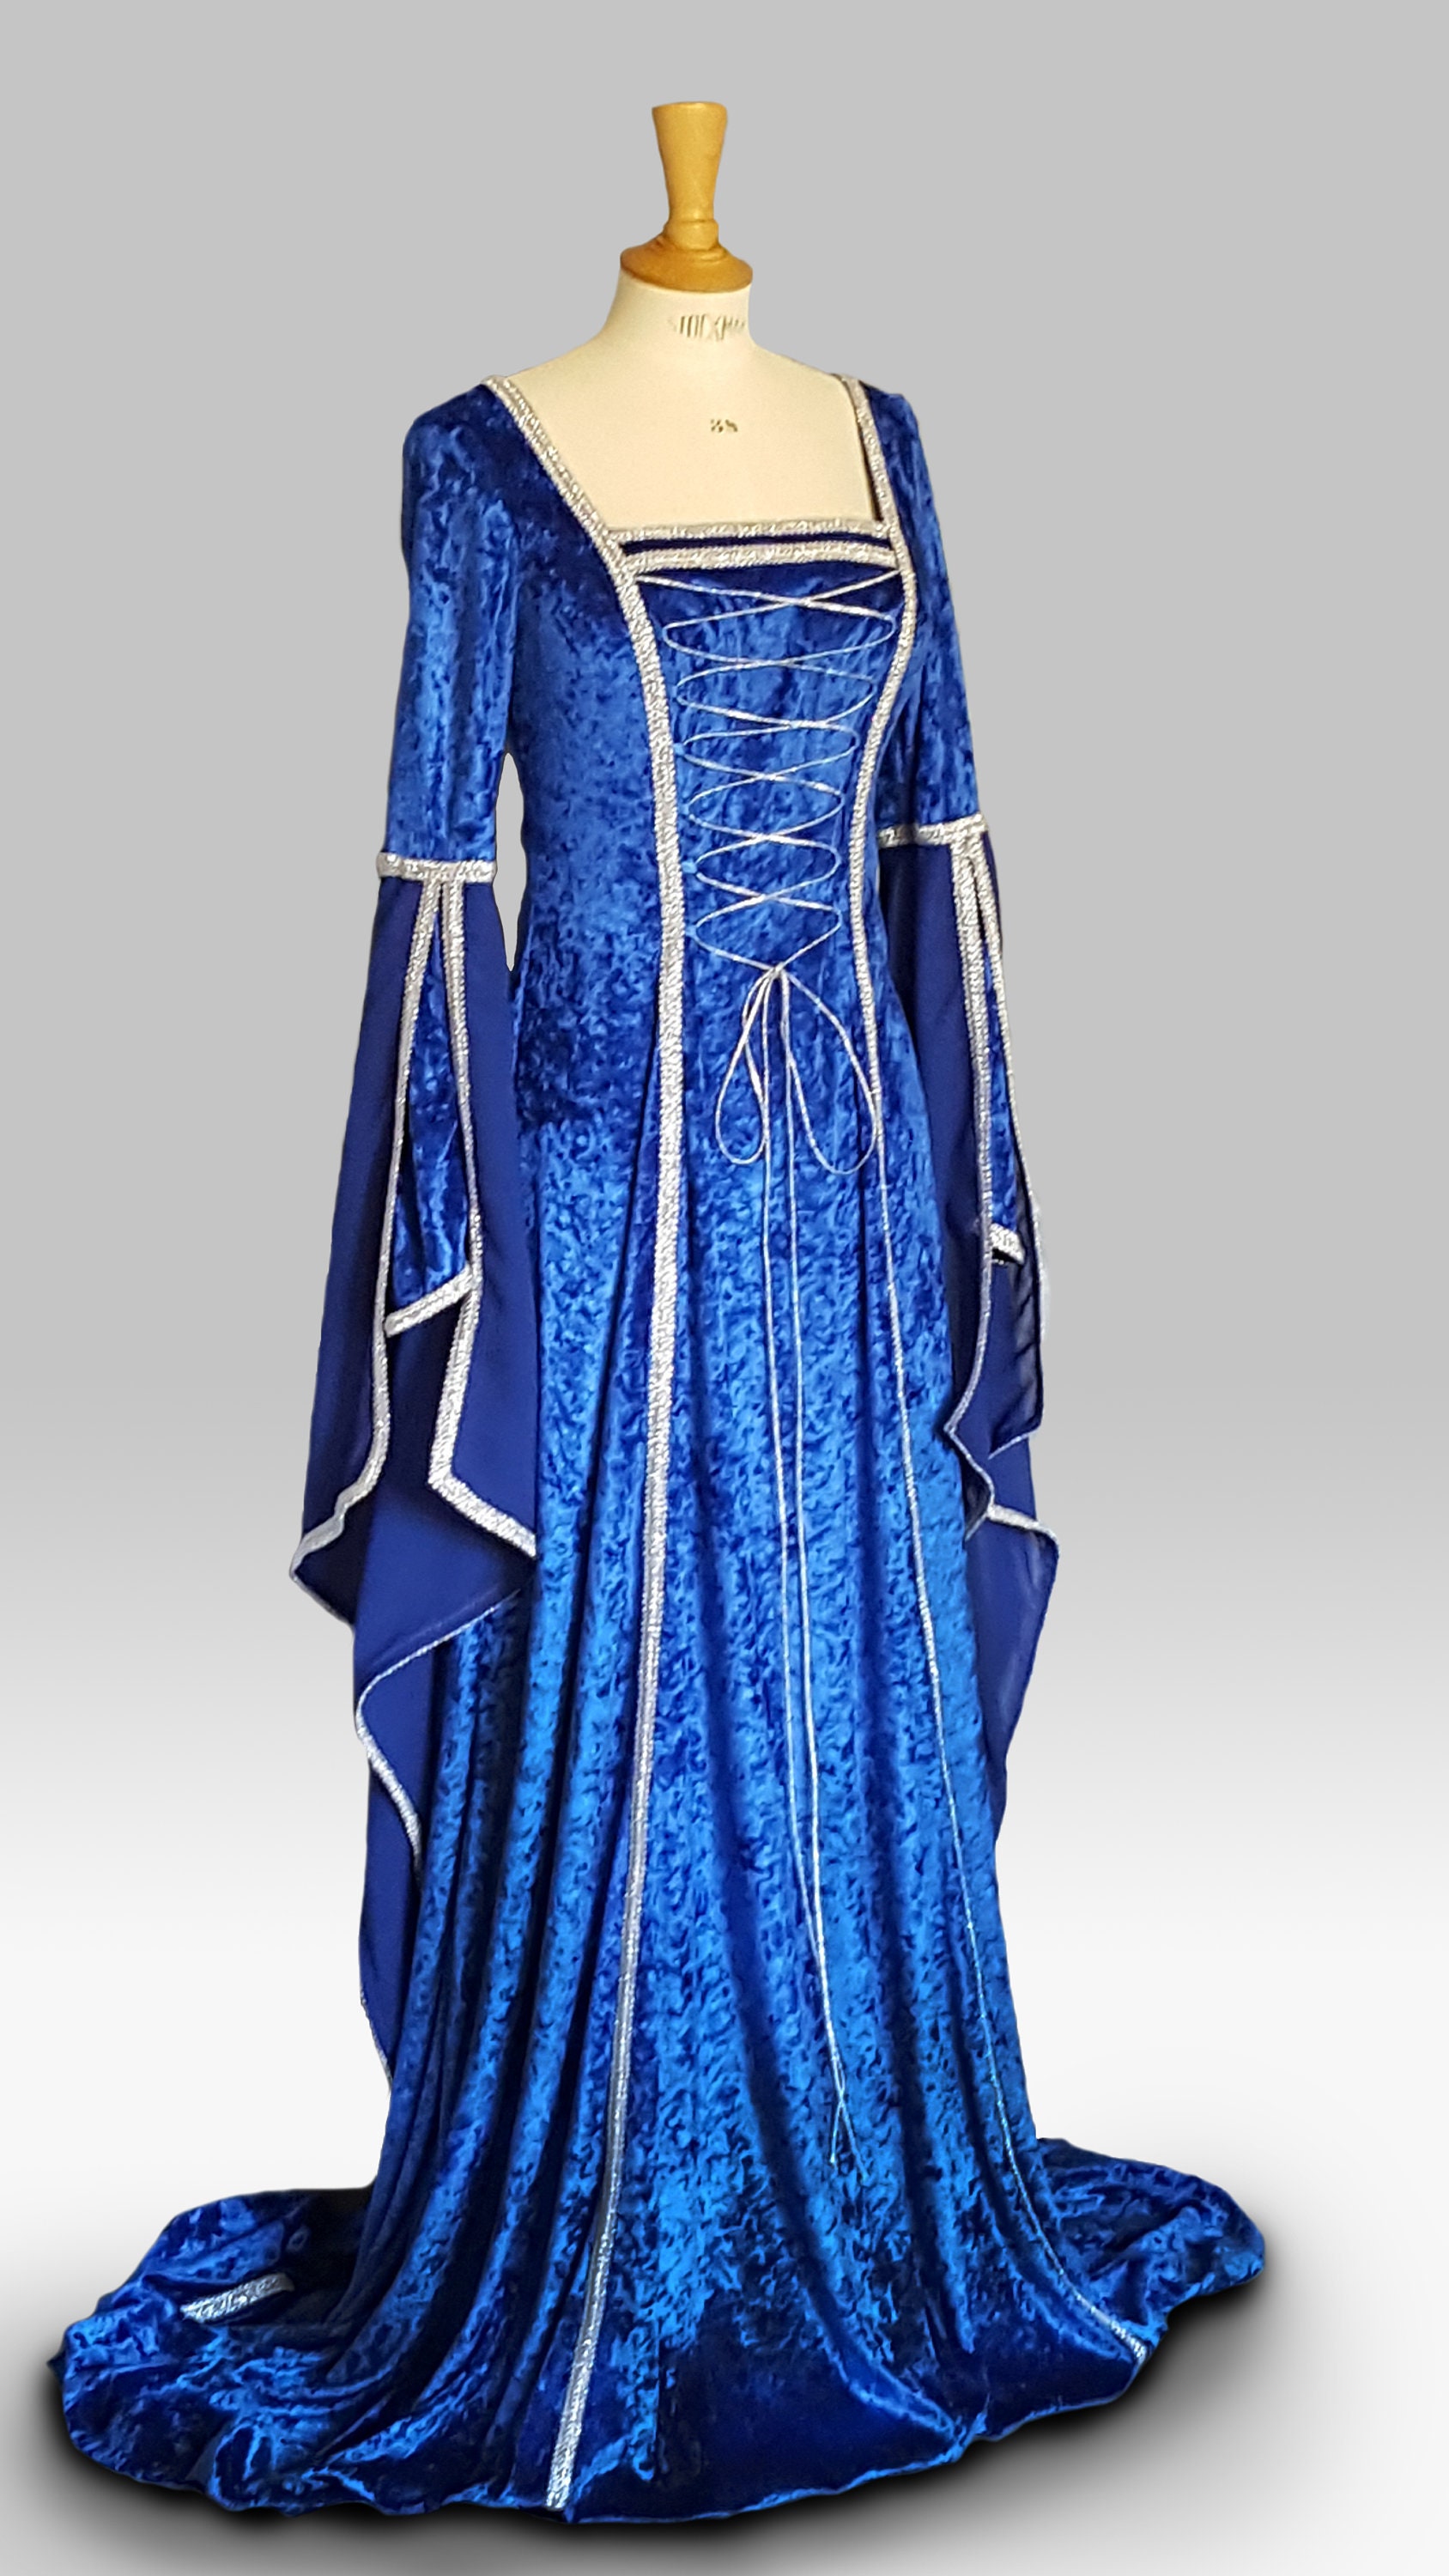 Vestido Medieval azul - Unha de Romanos